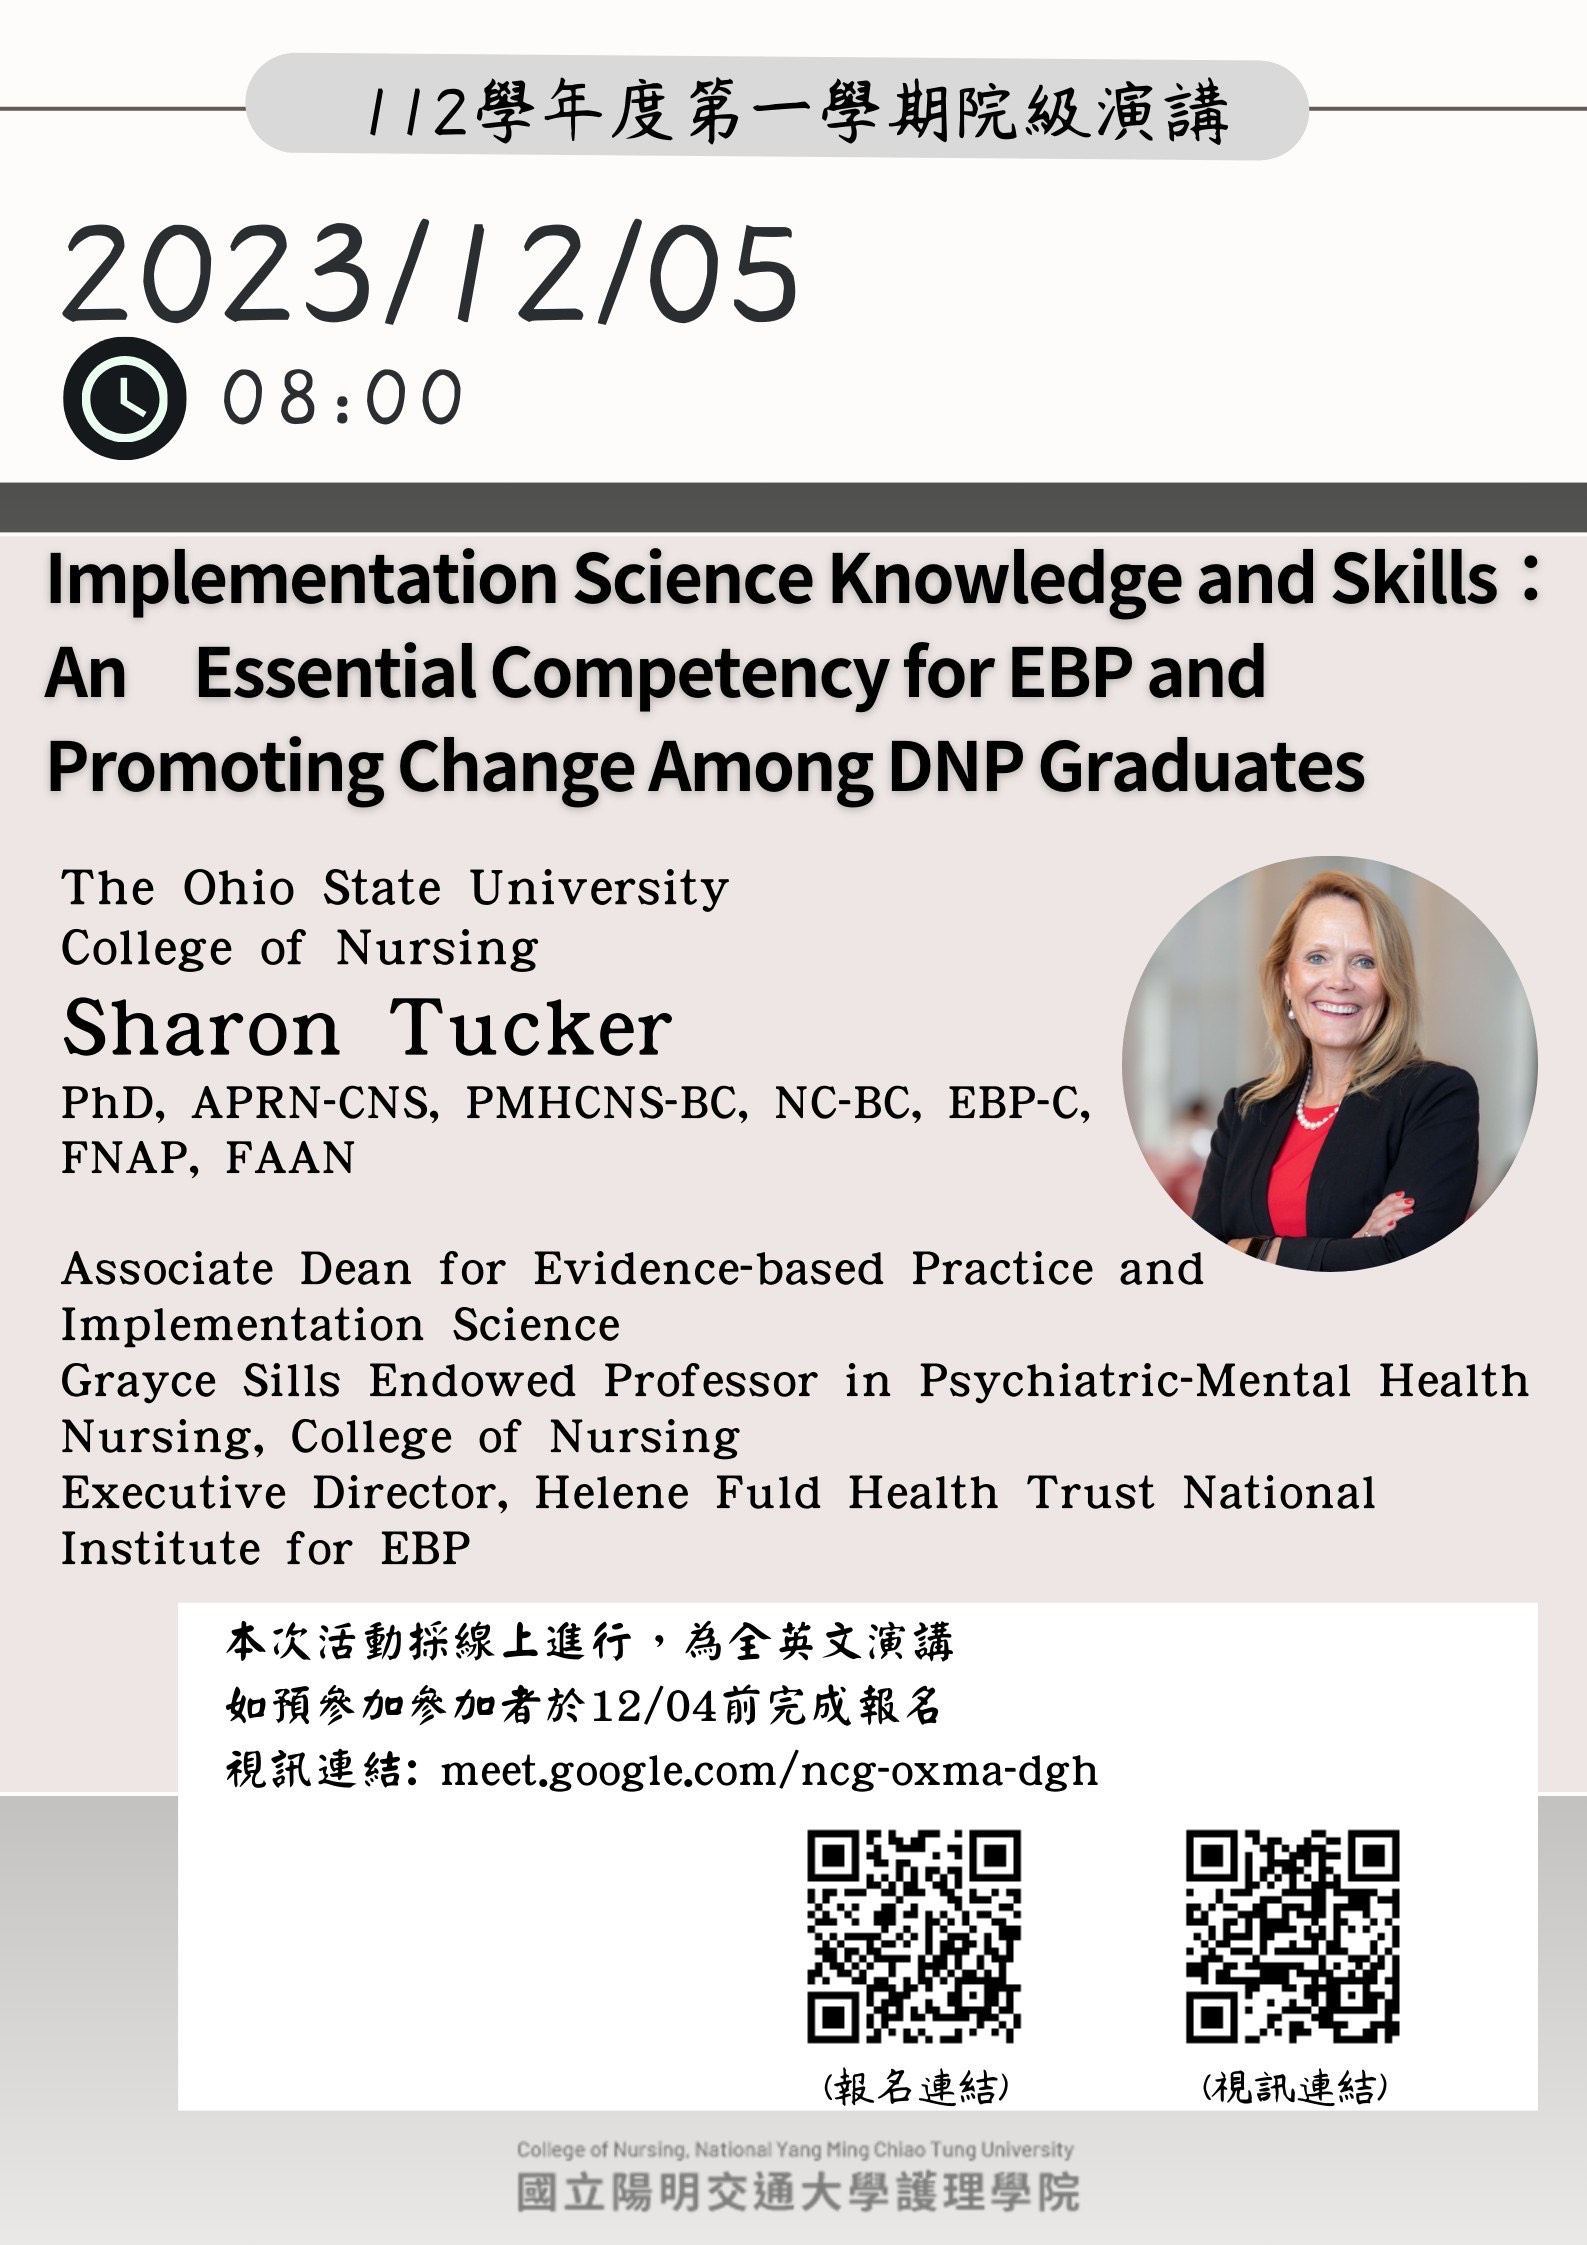 【院級演講】12/6(三)0800 Implementation Science Knowledge and Skills：An Essential Competency for EBP and Promoting Change Among DNP Graduates